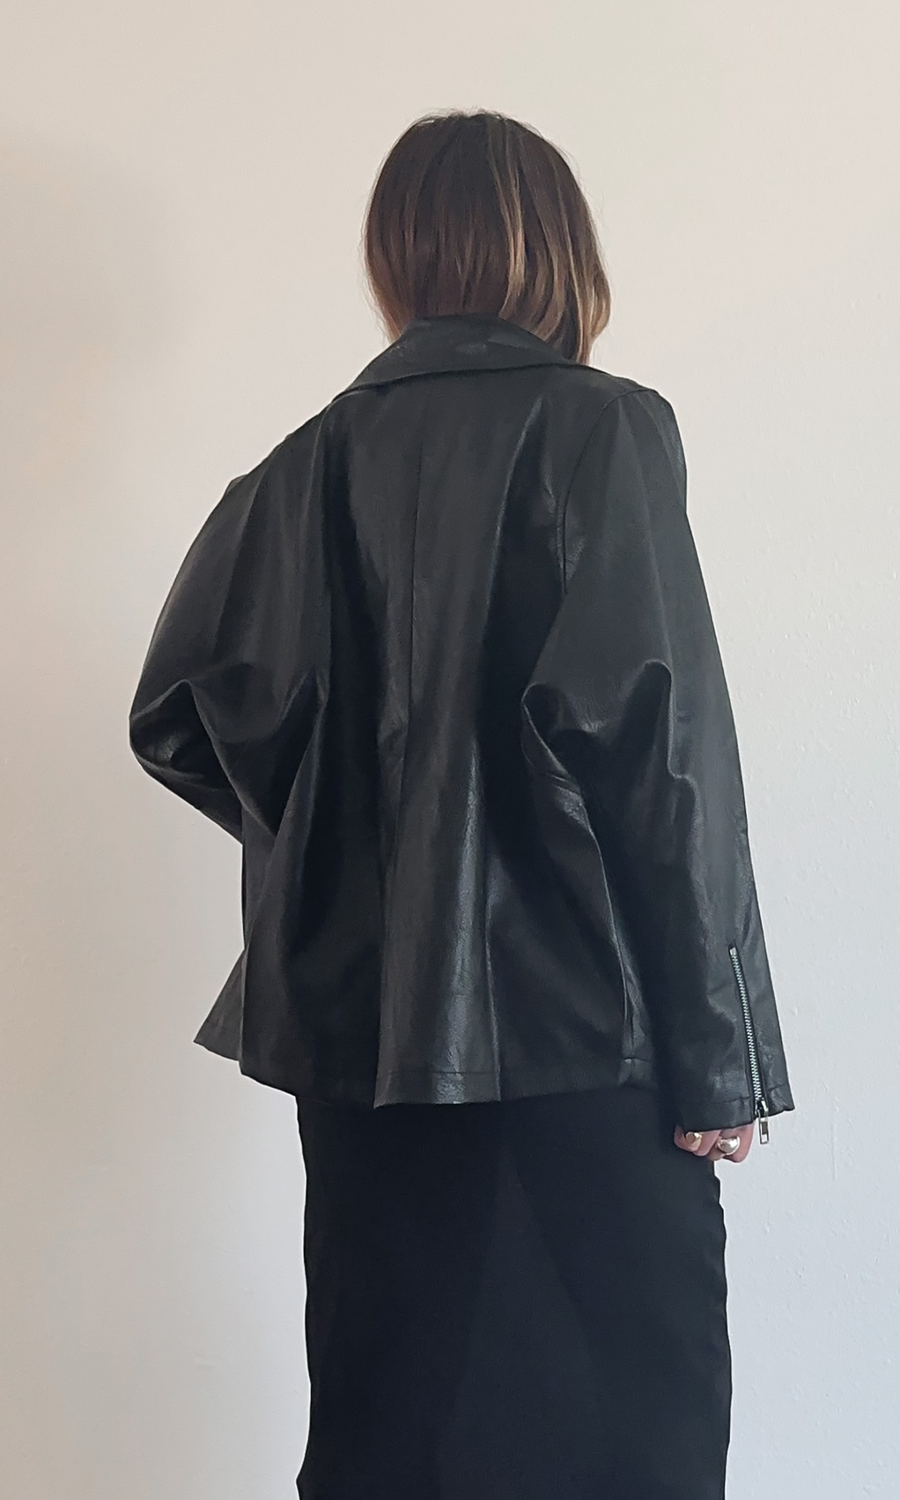 Hard Edge Leather Jacket